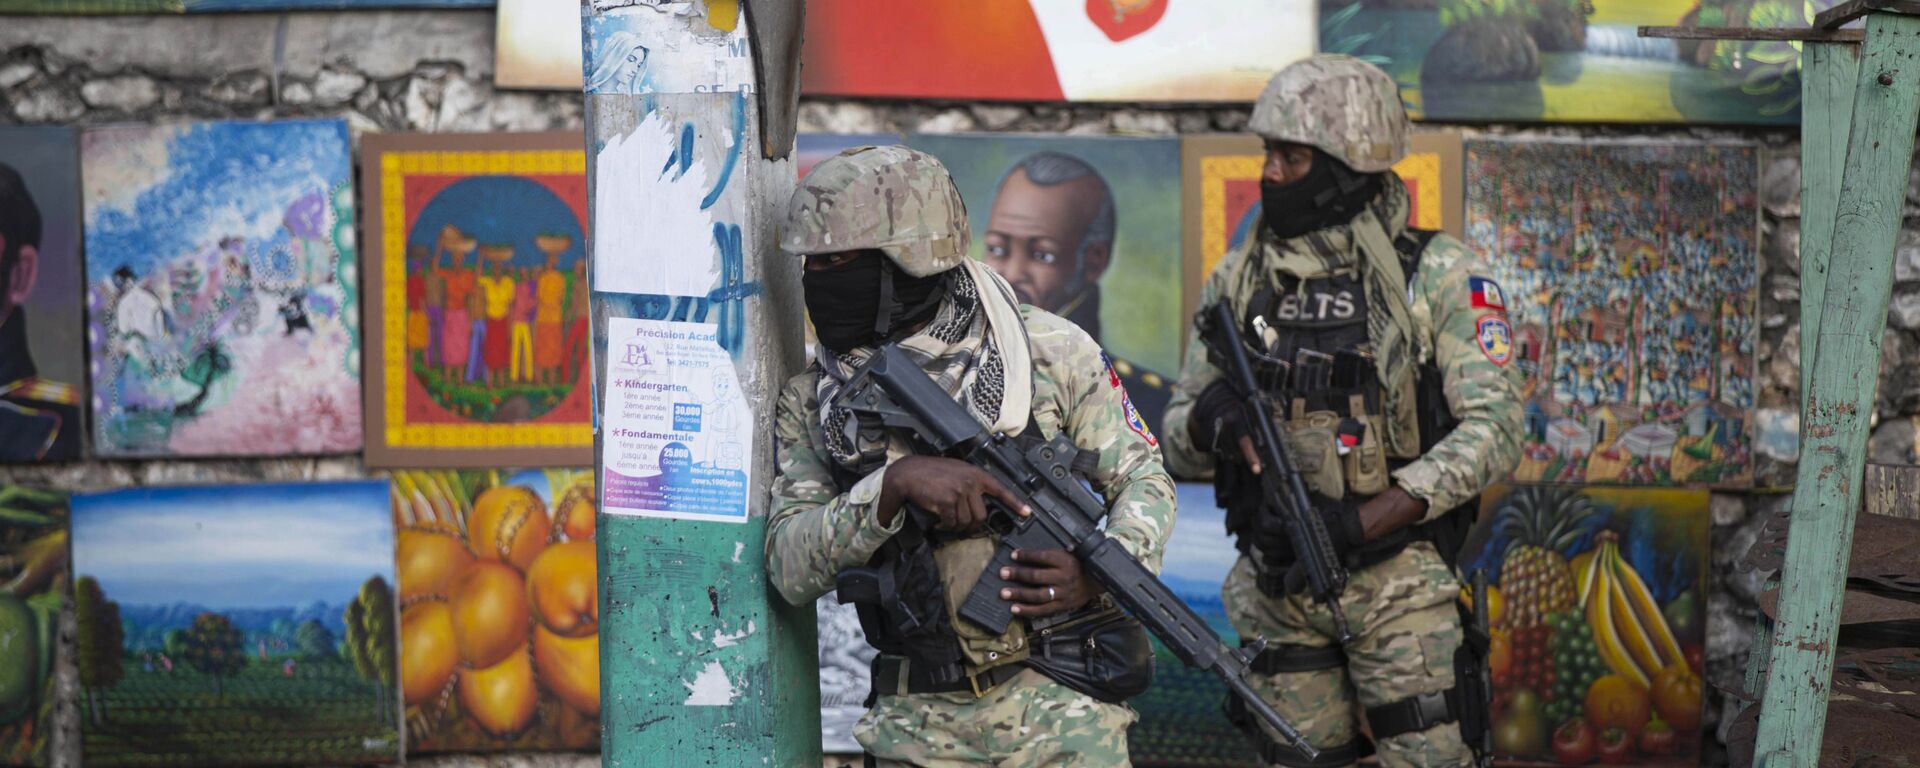 Солдаты патрулируют Петион Вилль, район, где жил покойный президент Гаити Жовенель Мойз, в Порт-о-Пренсе, Гаити - Sputnik Узбекистан, 1920, 11.07.2021